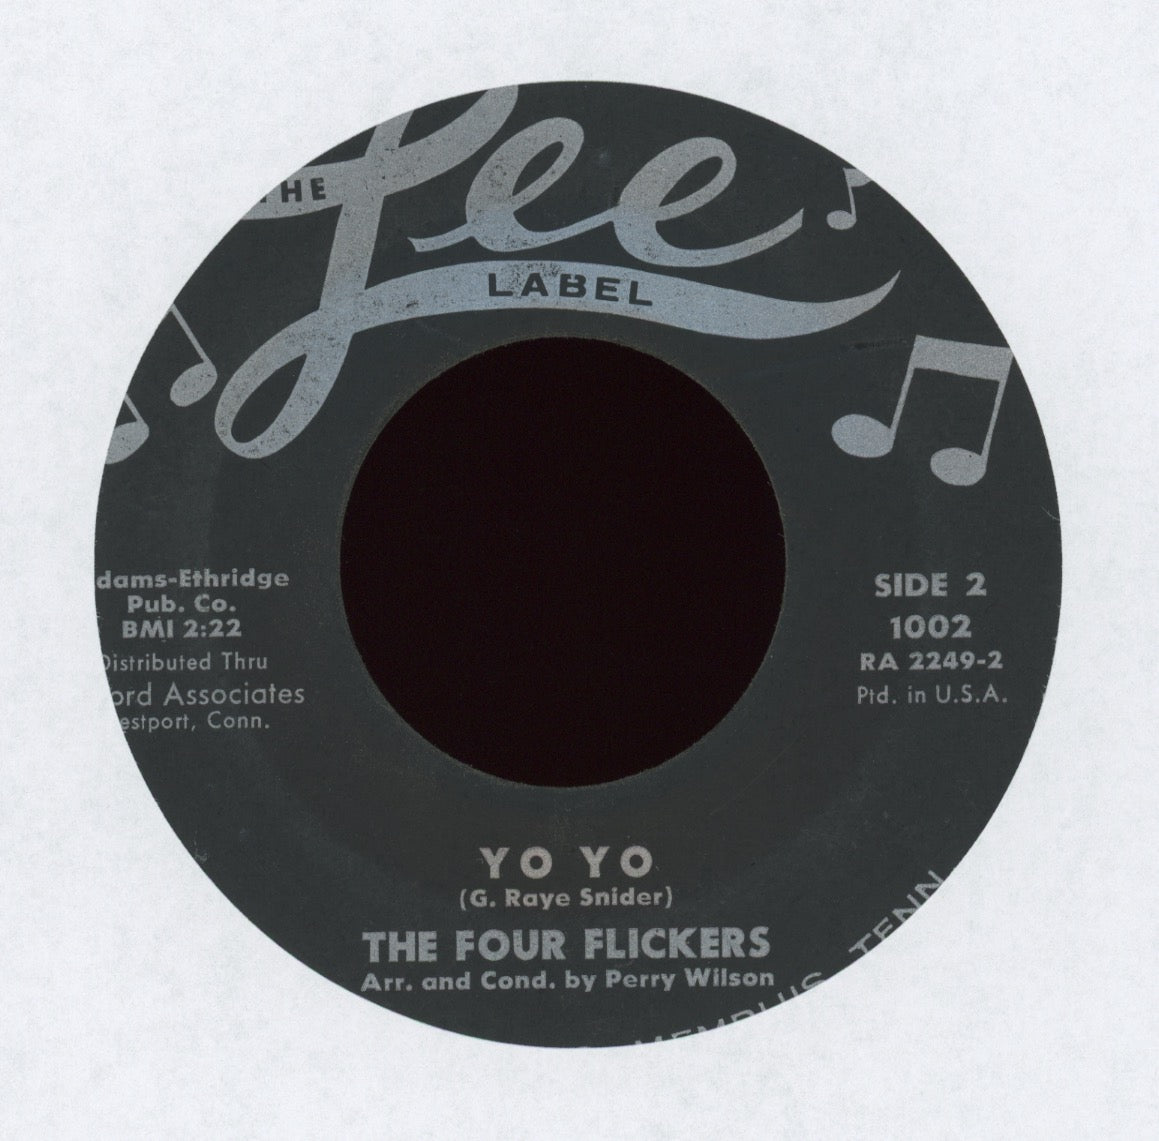 The Four Flickers - Yo Yo on Lee